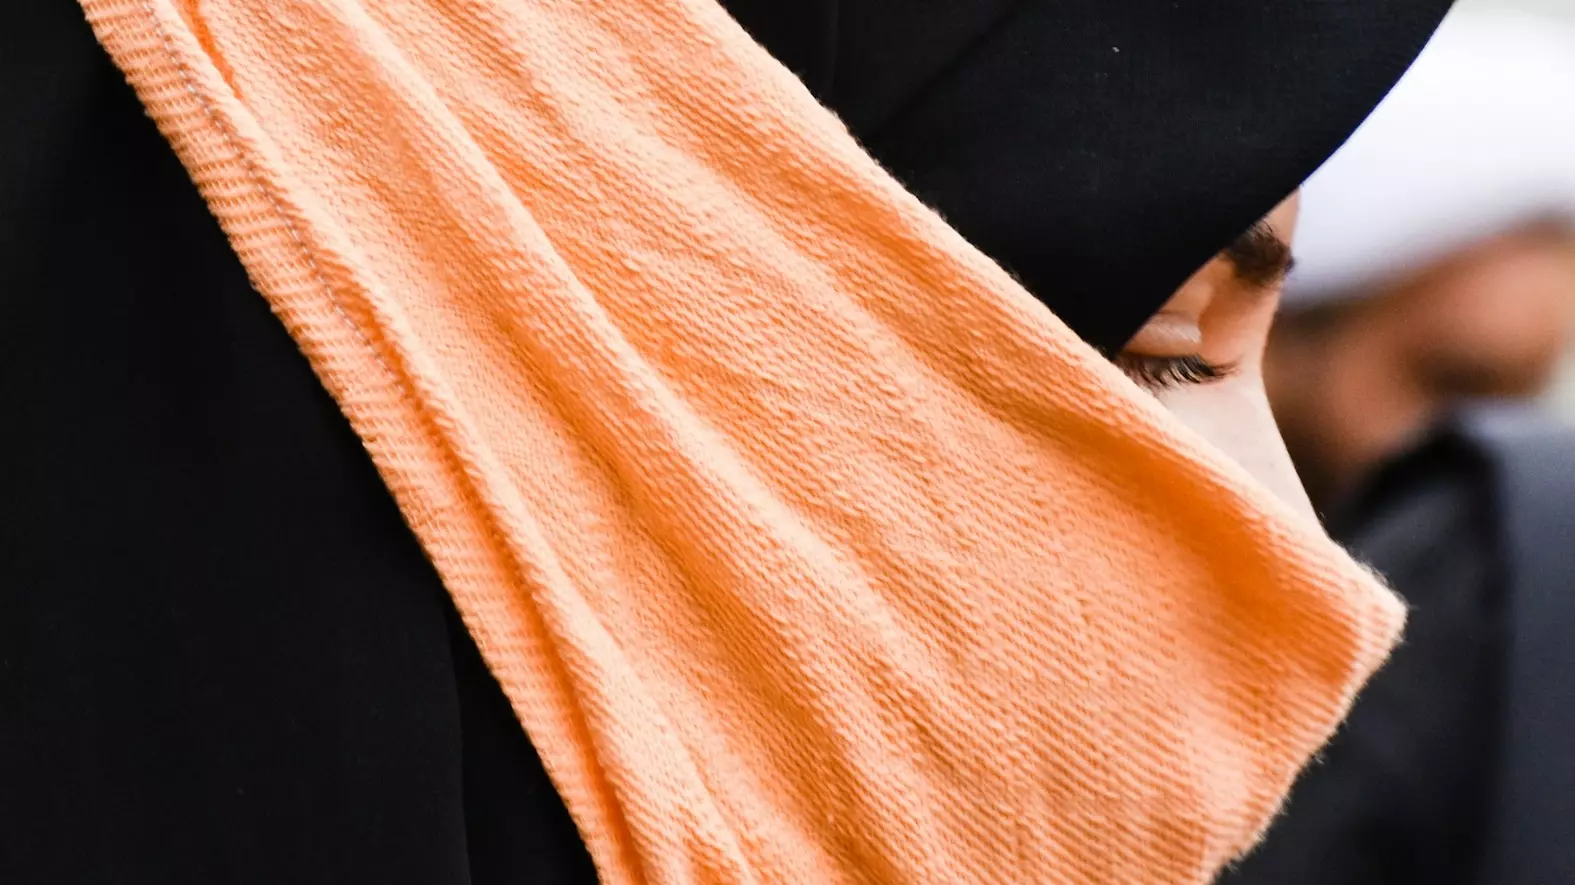 к девушкам в хиджабах на улице подбегали возмущенные граждане, снимали их на камеру, дергали, оскорбляли